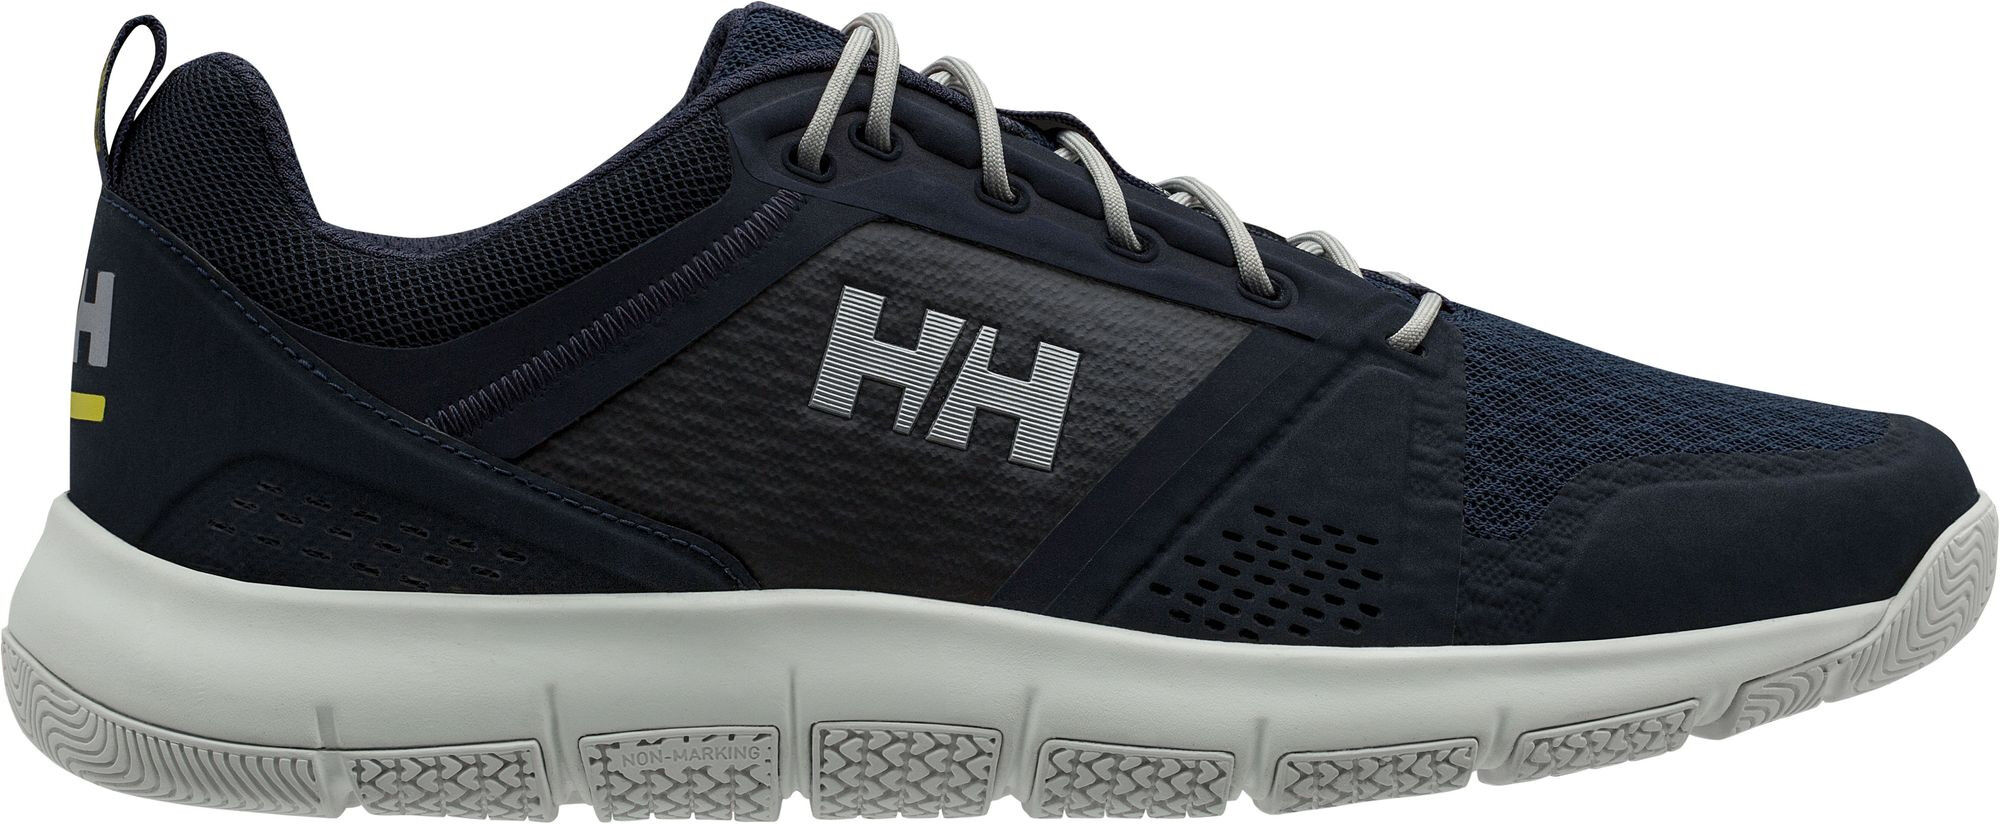 Helly Hansen Skagen F-1 Offshore - Chaussures voile homme | Hardloop